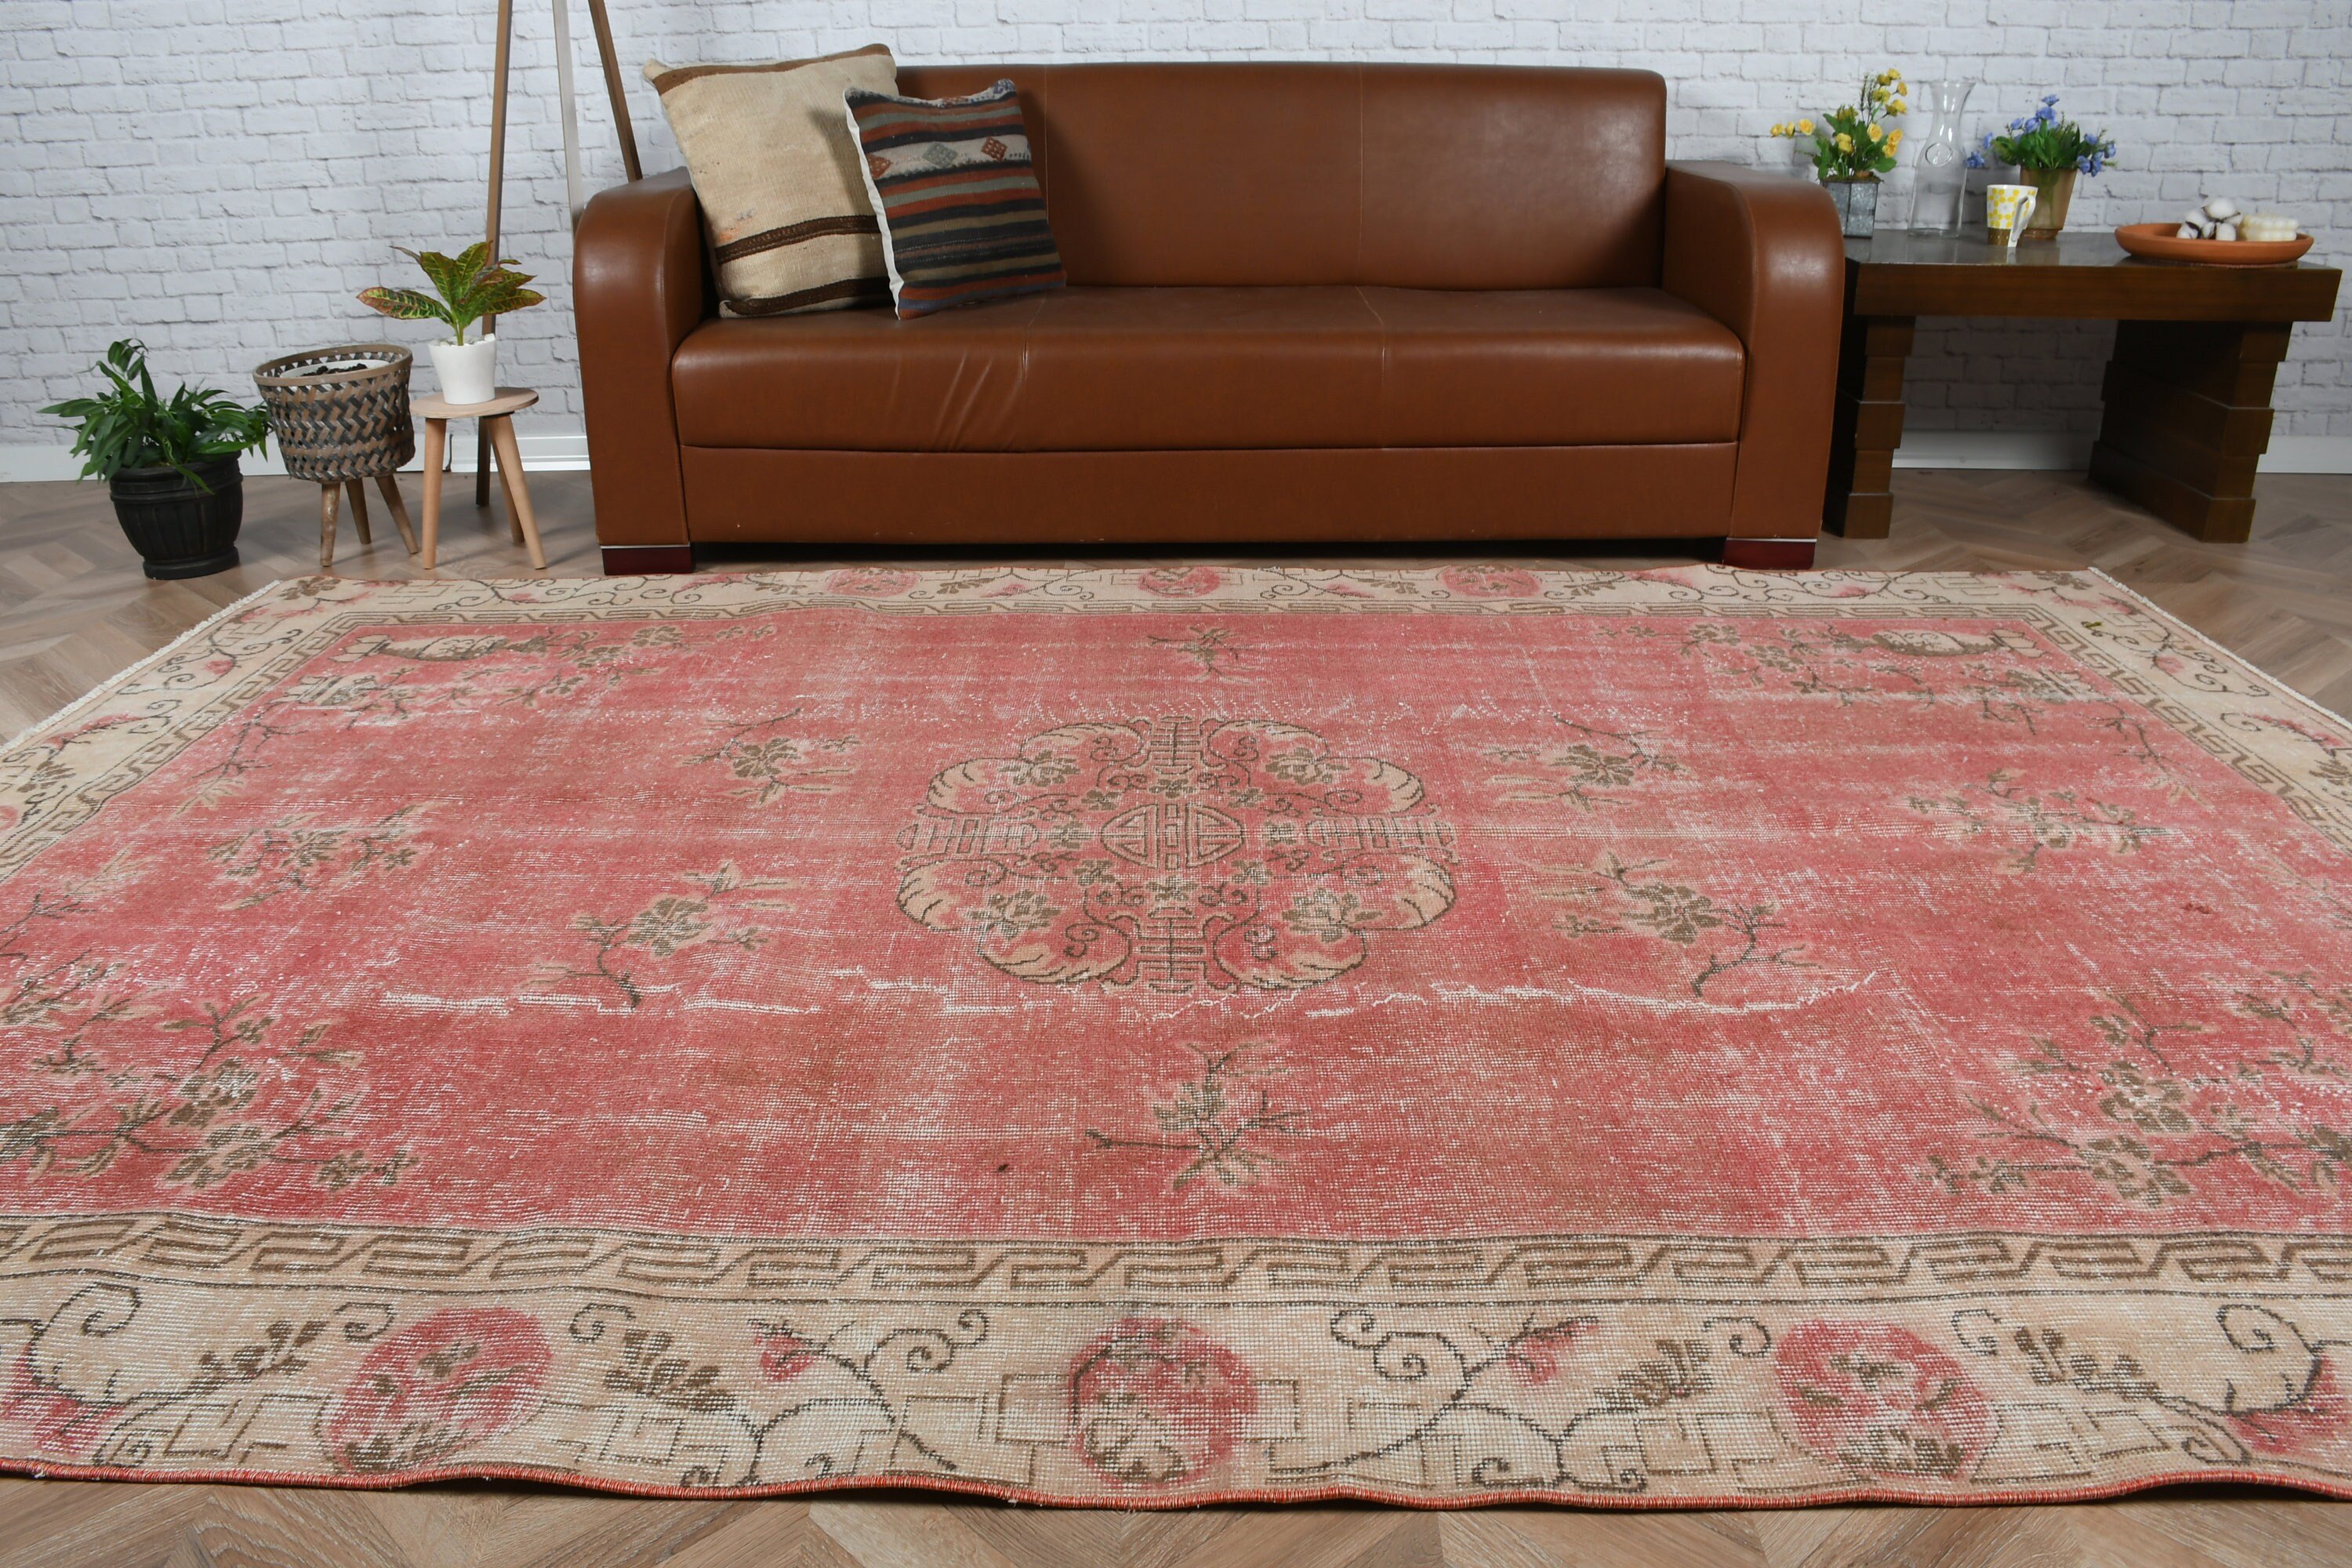 Oriental Rug, Wool Rug, Living Room Rugs, Rugs for Salon, Vintage Rug, Dining Room Rug, Turkish Rug, Red Floor Rugs, 6.6x9.9 ft Large Rug